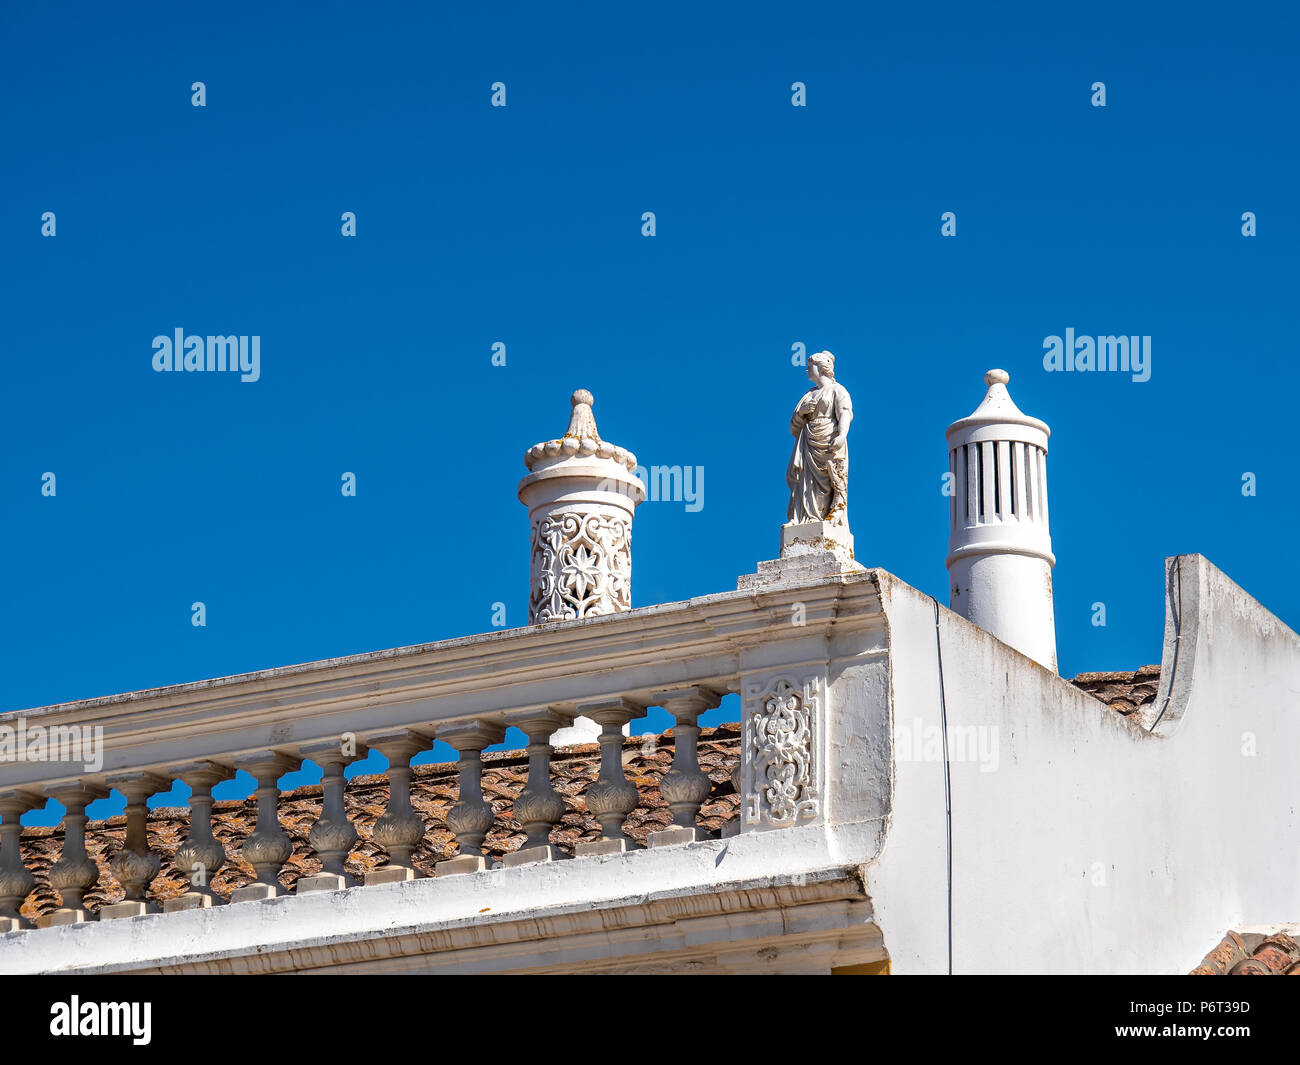 Cheminées décoratives typique sur les toits de maisons, Algarve, Portugal Banque D'Images